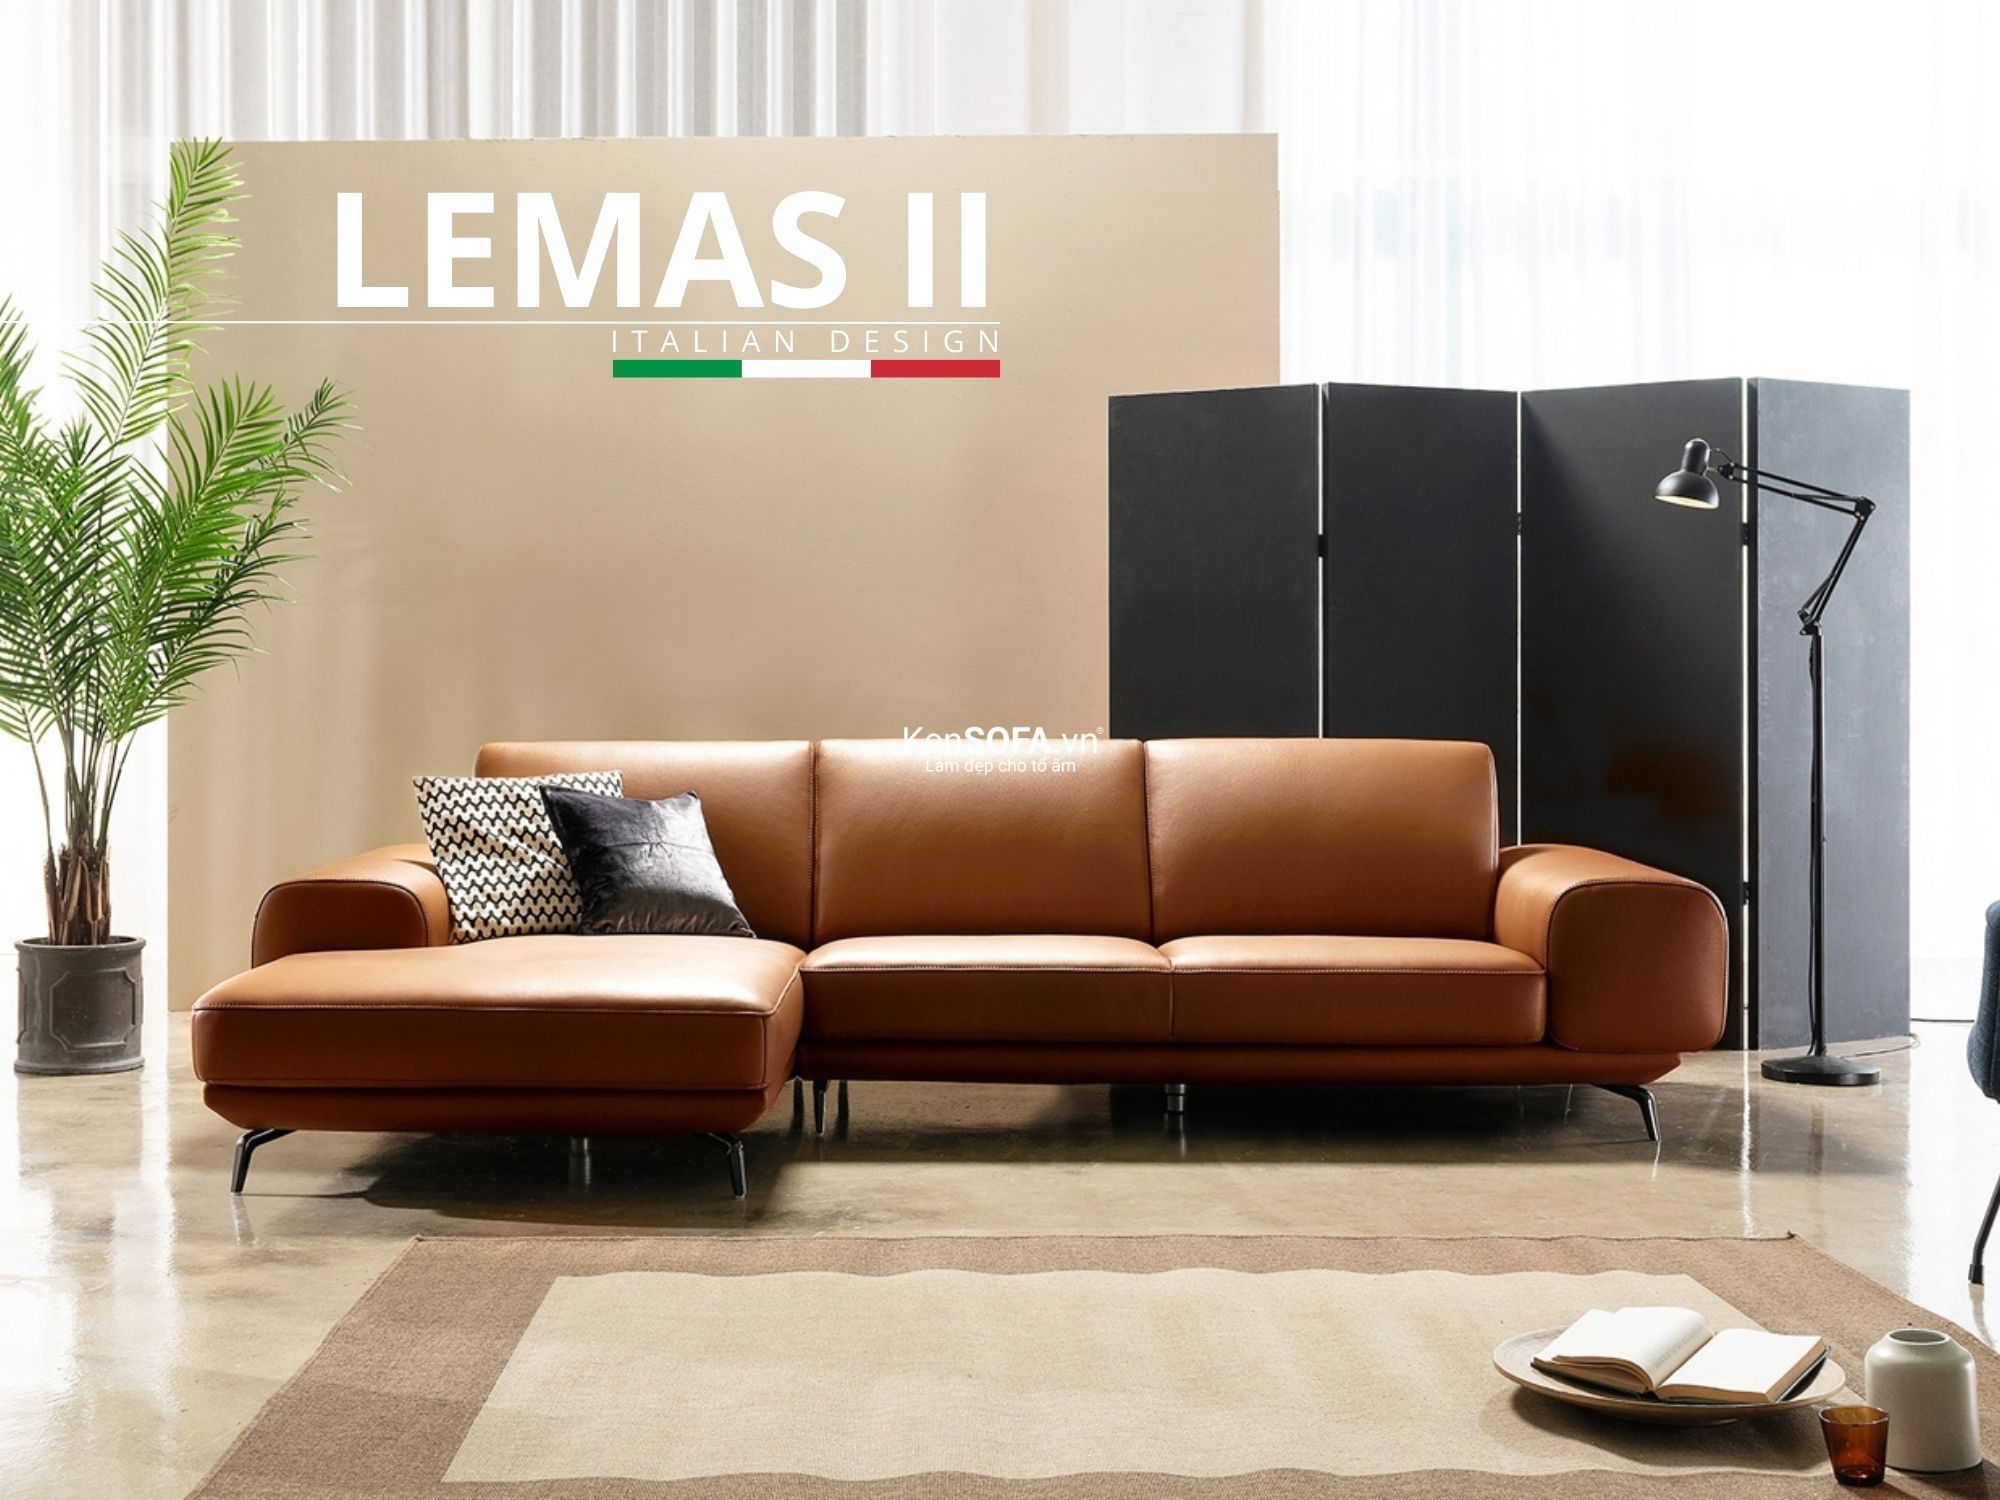 Sofa góc da cao cấp CC56 Lemas II da Hàn Quốc nhập khẩu